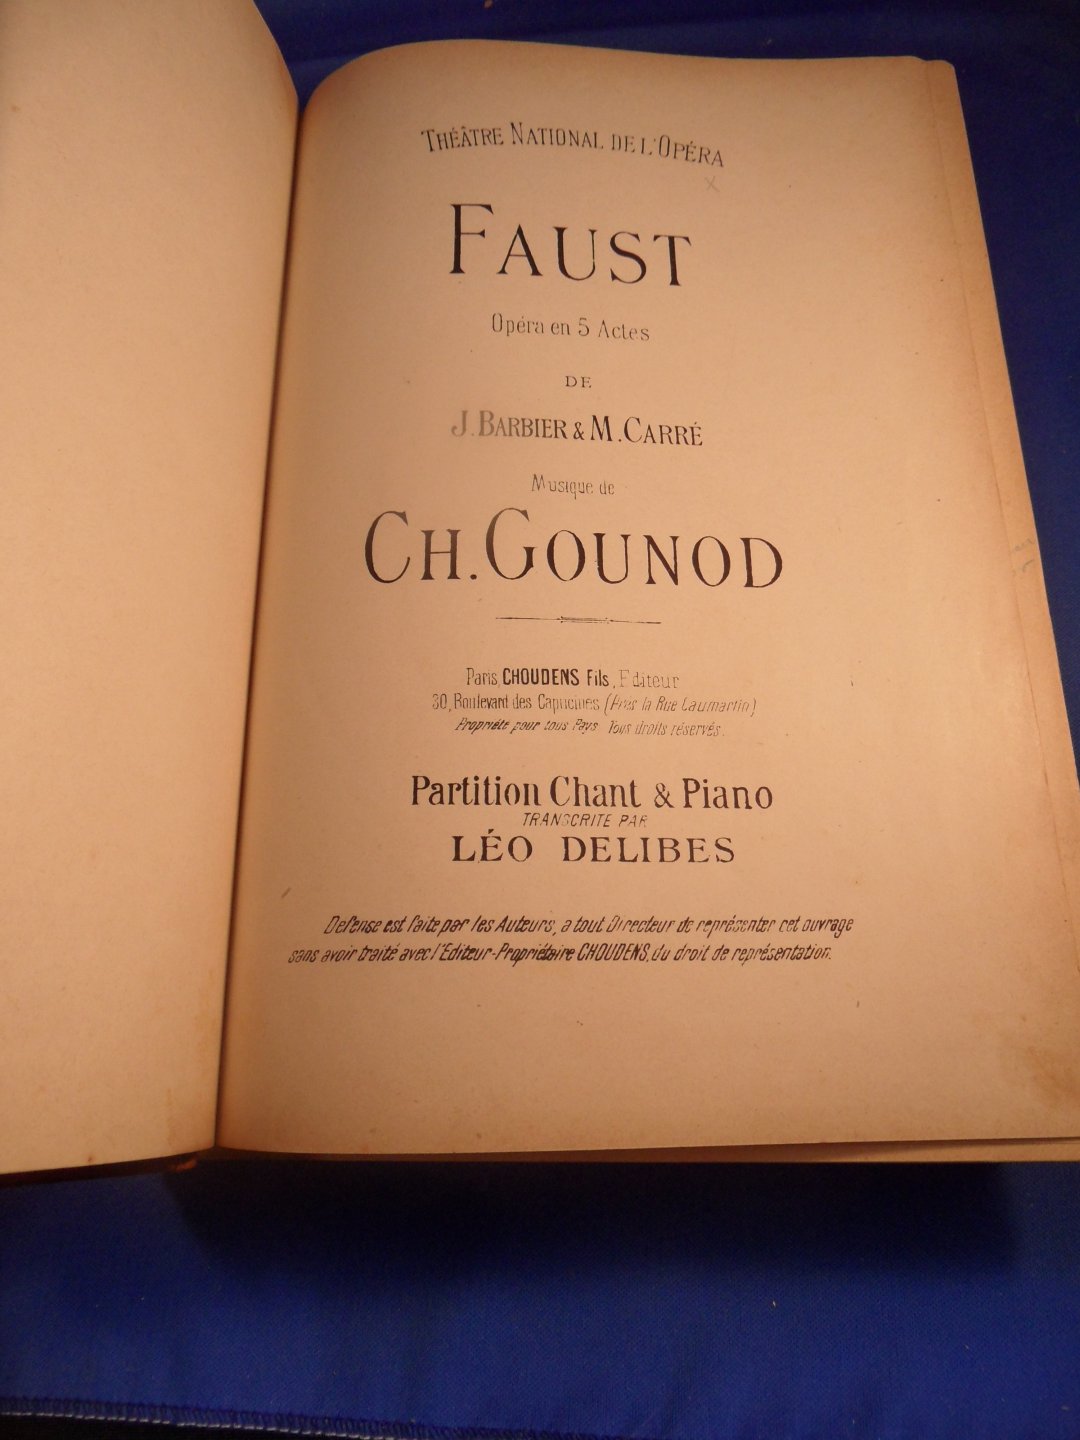 Gounod, Ch. - Faust, opéra en 5 actes de J. Barbier & M. Carré